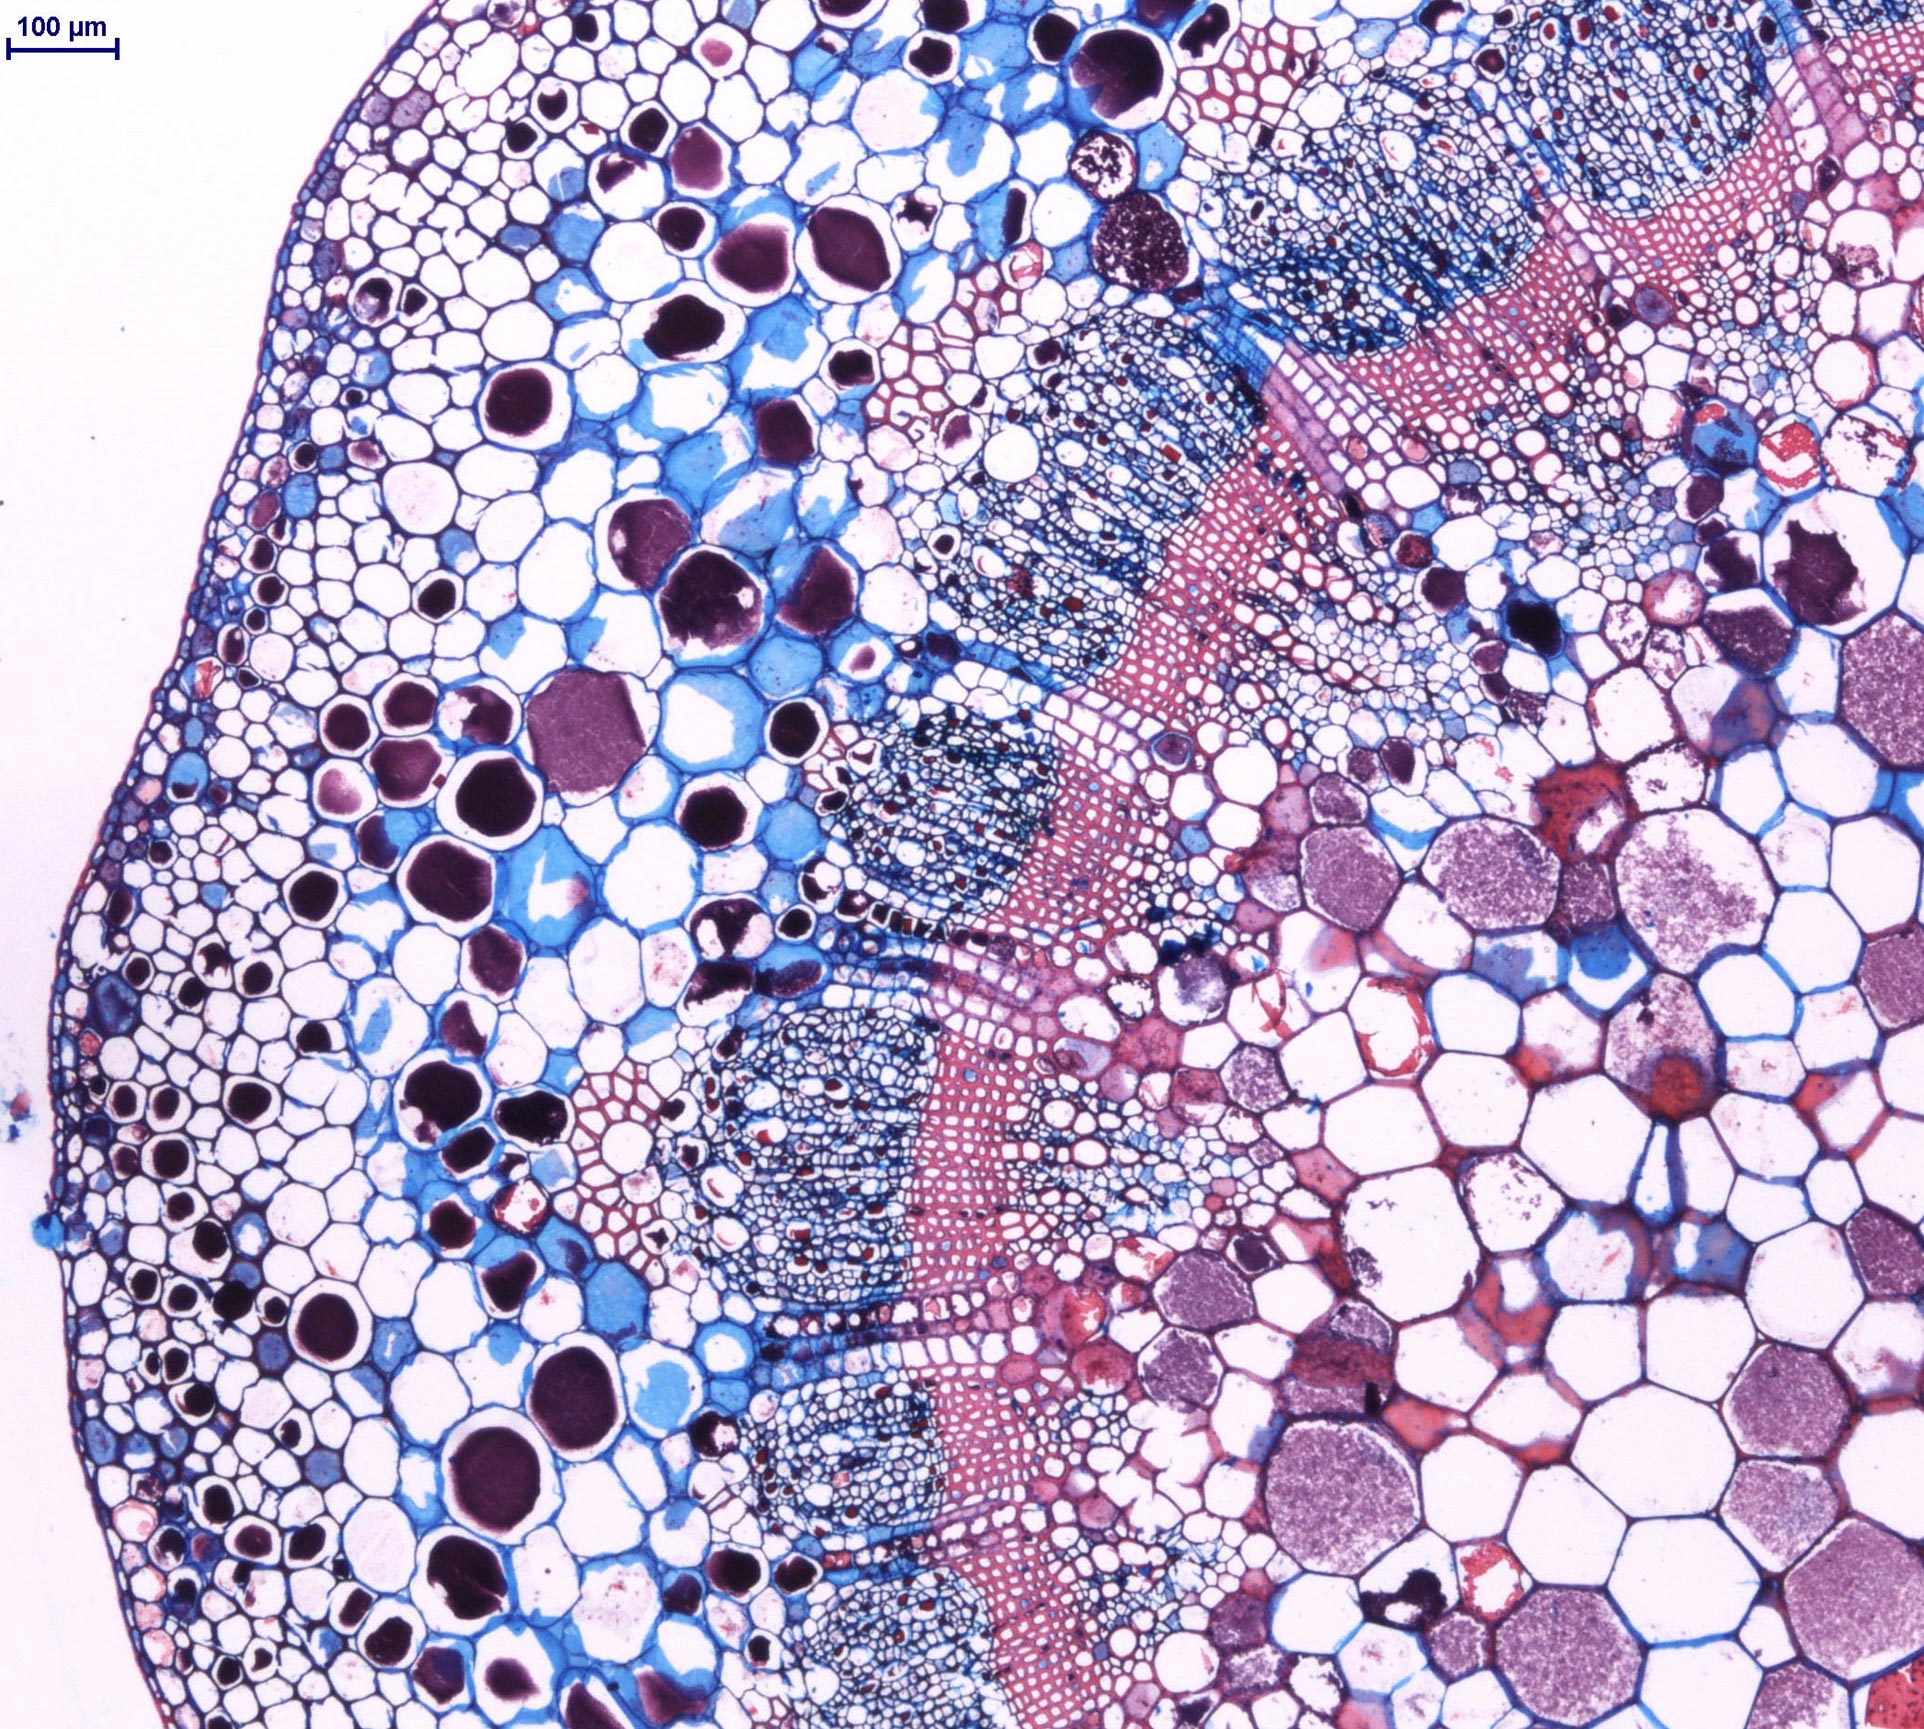 En la imagen se observa la zona de unión entre la planta y el racimo de uvas. En esta zona, llamado pedúnculo, los elementos celulares se disponen formando patrones sin dejar espacio entre ellos. En azul, se visualizan los depósitos de celulosa, y en rosa, los depósitos de lignina en las paredes vegetales de las células. 